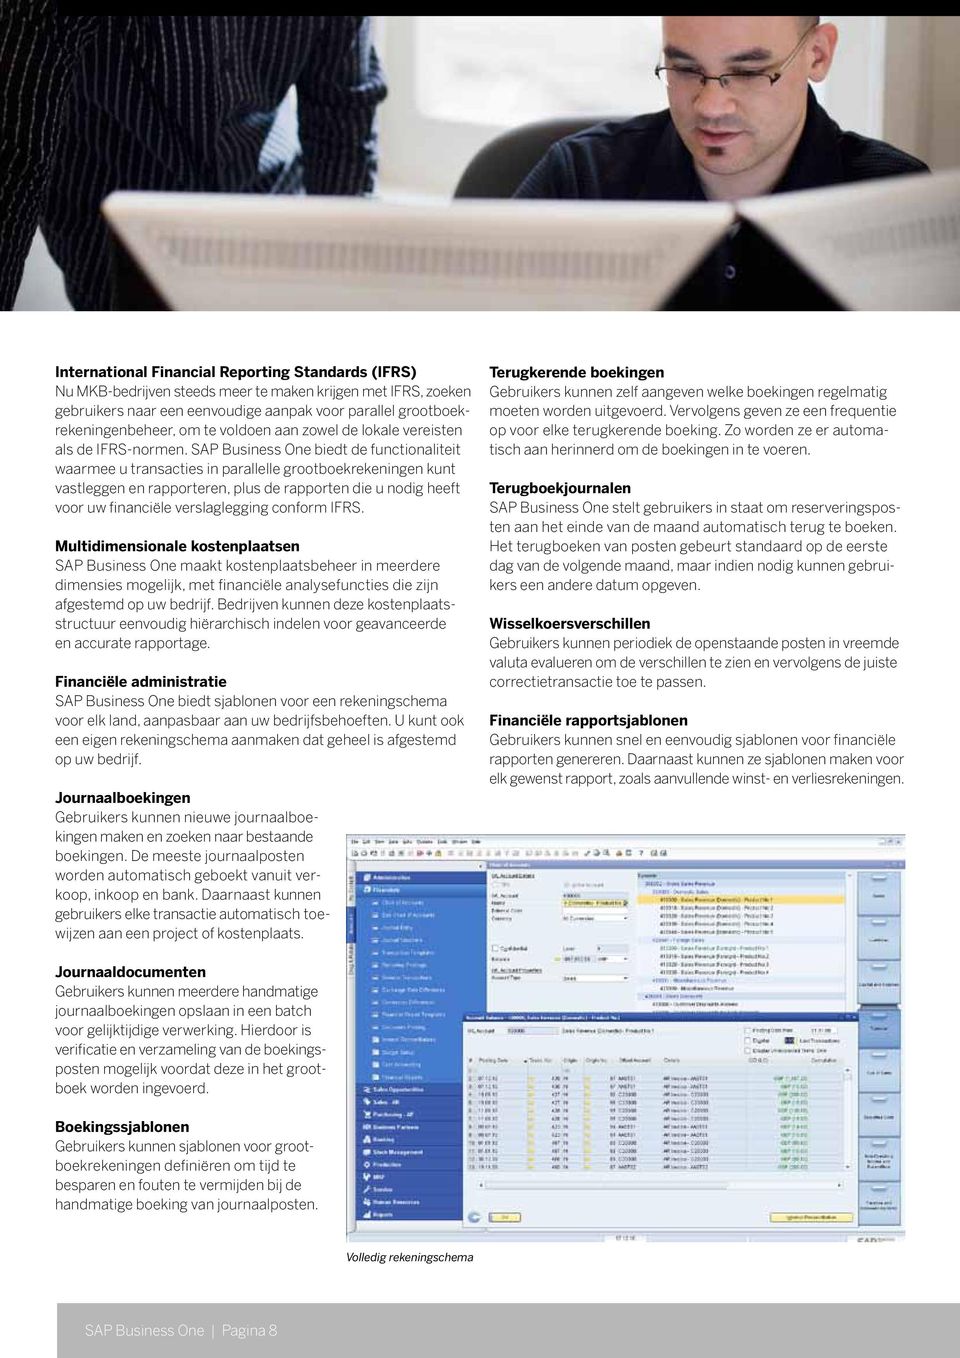 SAP Business One biedt de functionaliteit waarmee u transacties in parallelle grootboekrekeningen kunt vastleggen en rapporteren, plus de rapporten die u nodig heeft voor uw financiële verslaglegging